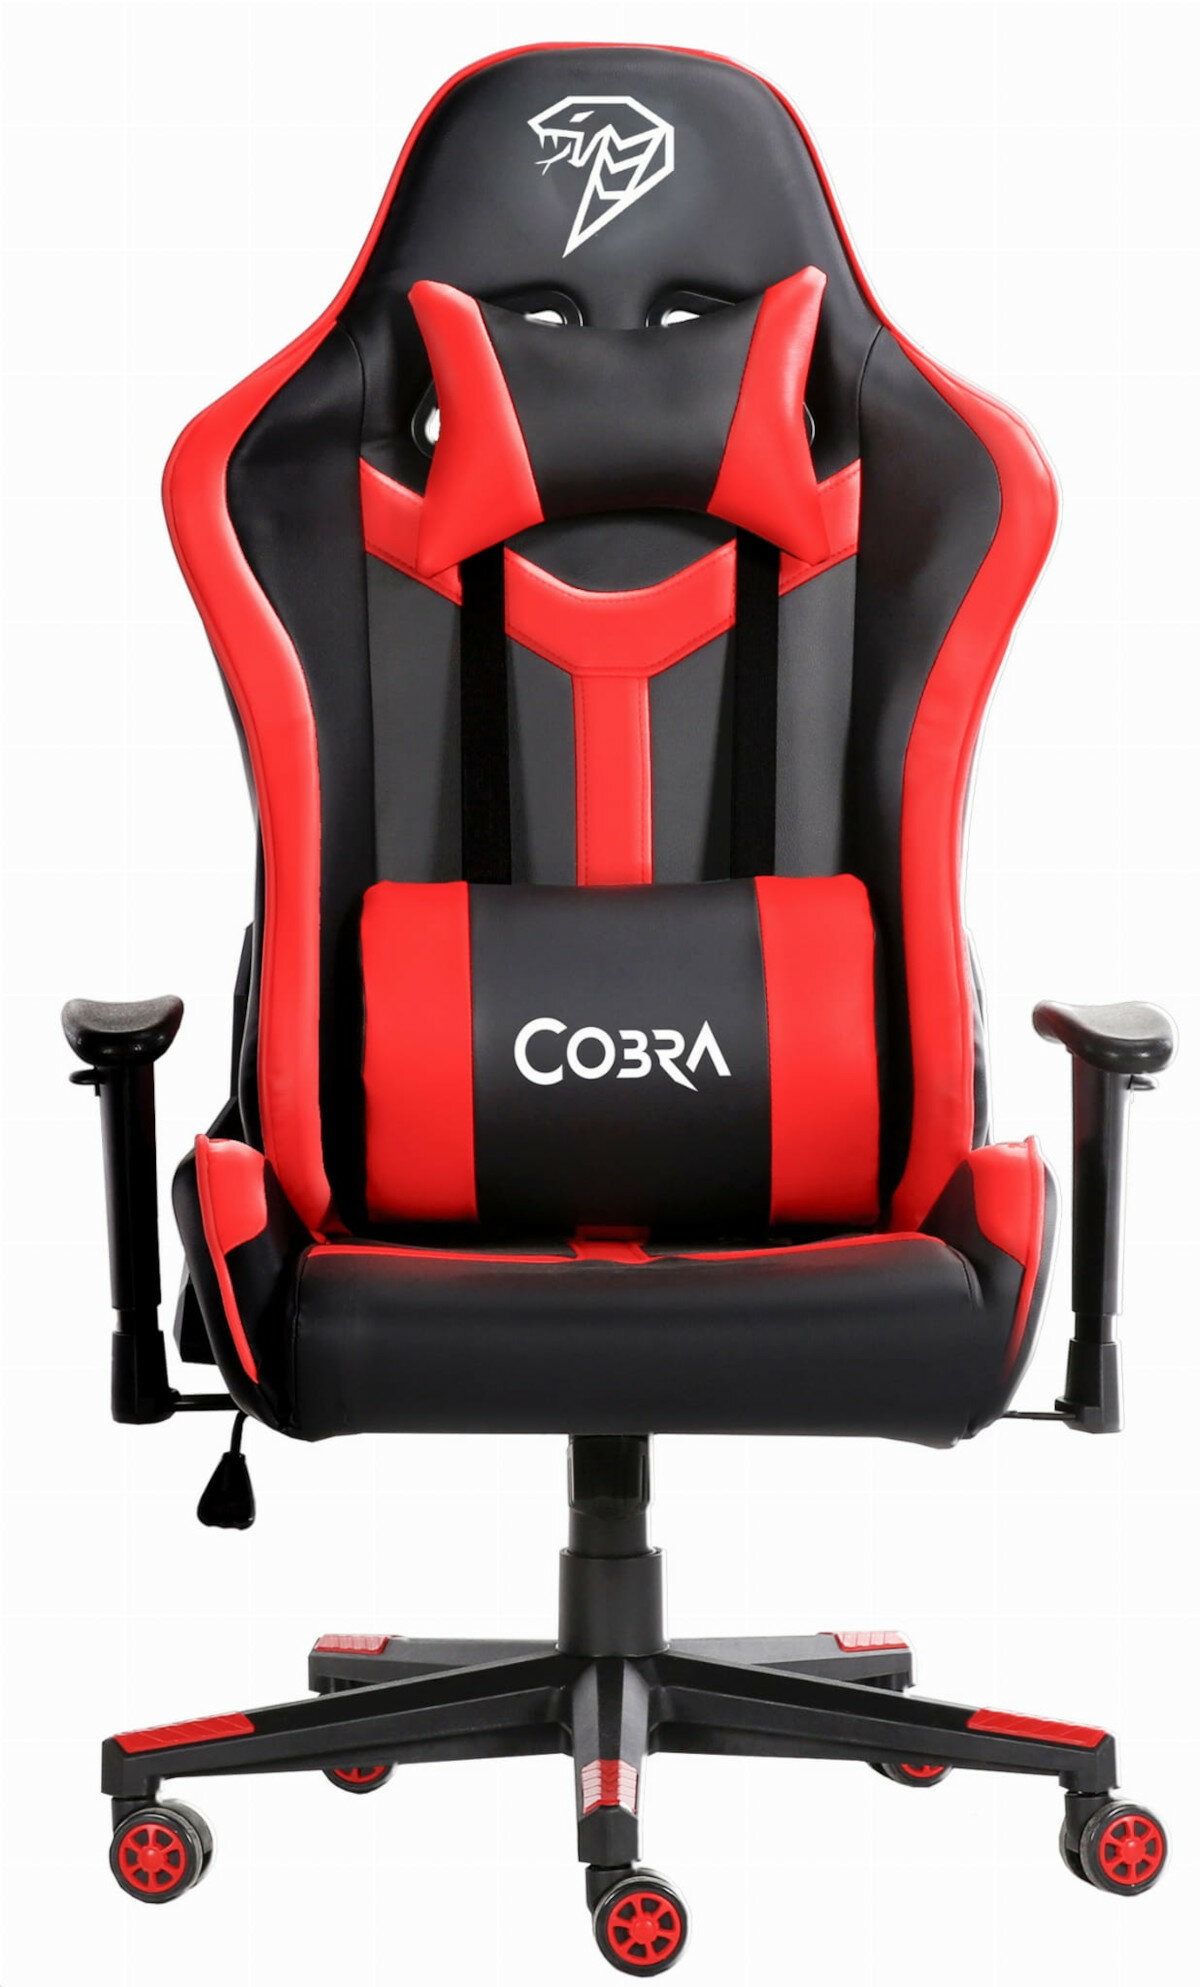 Fotel gamingowy Cobra X1 Pro widok na front na białym tle